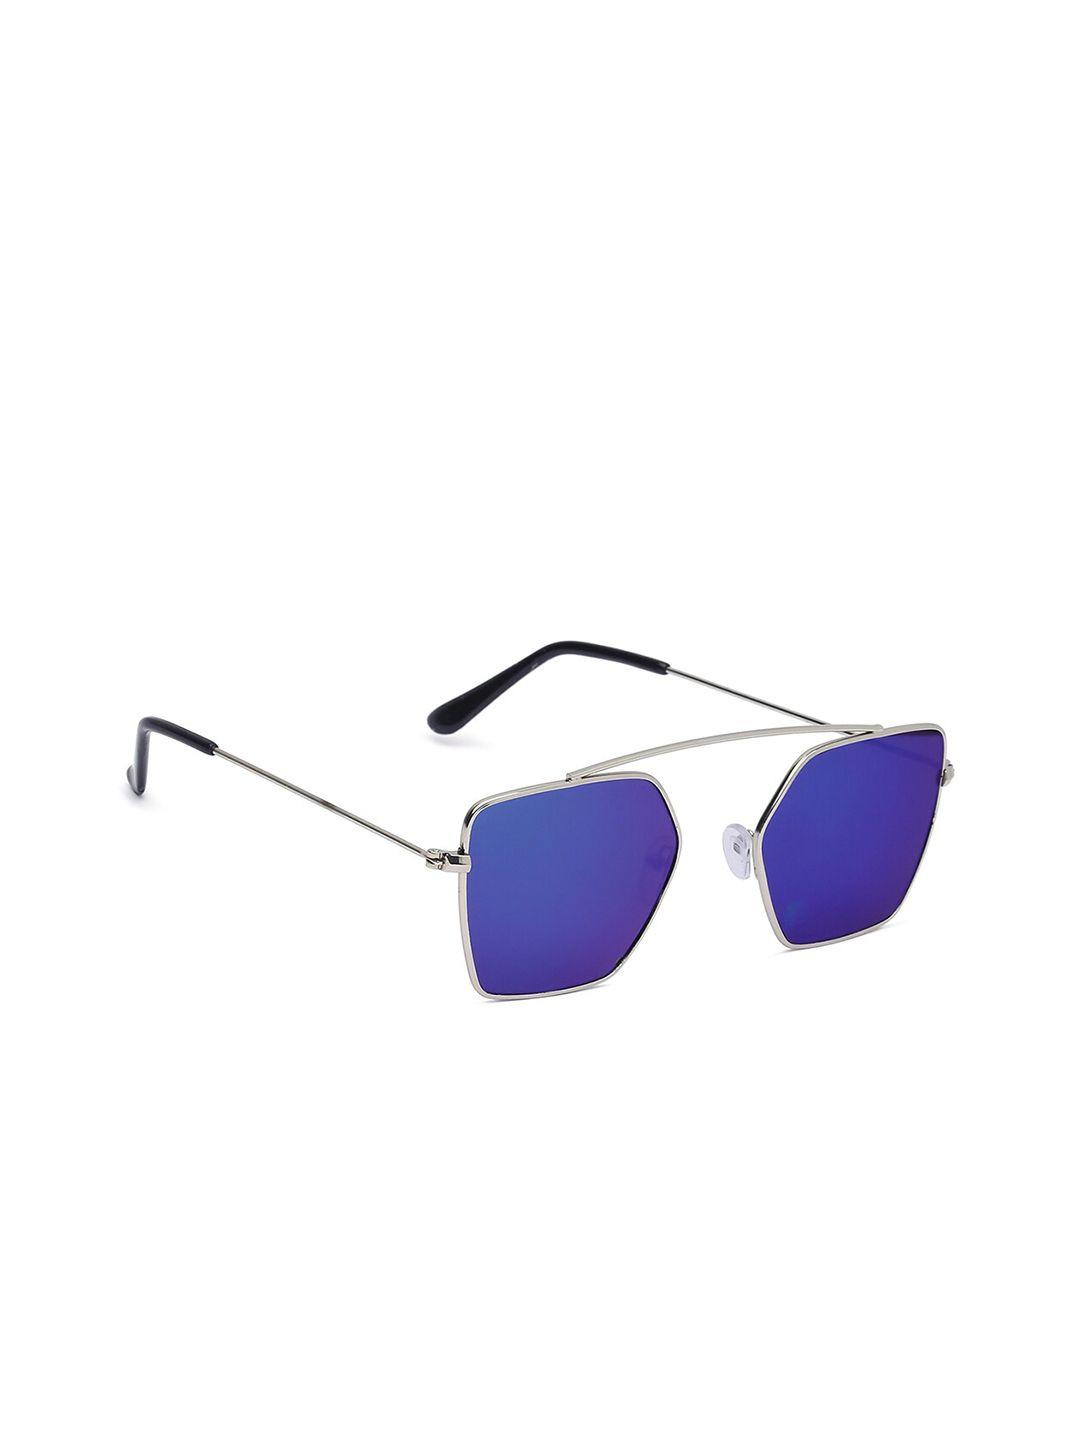 swiss design unisex mirrored lens & silver-toned sunglasses uv lens sdsg21-2255702